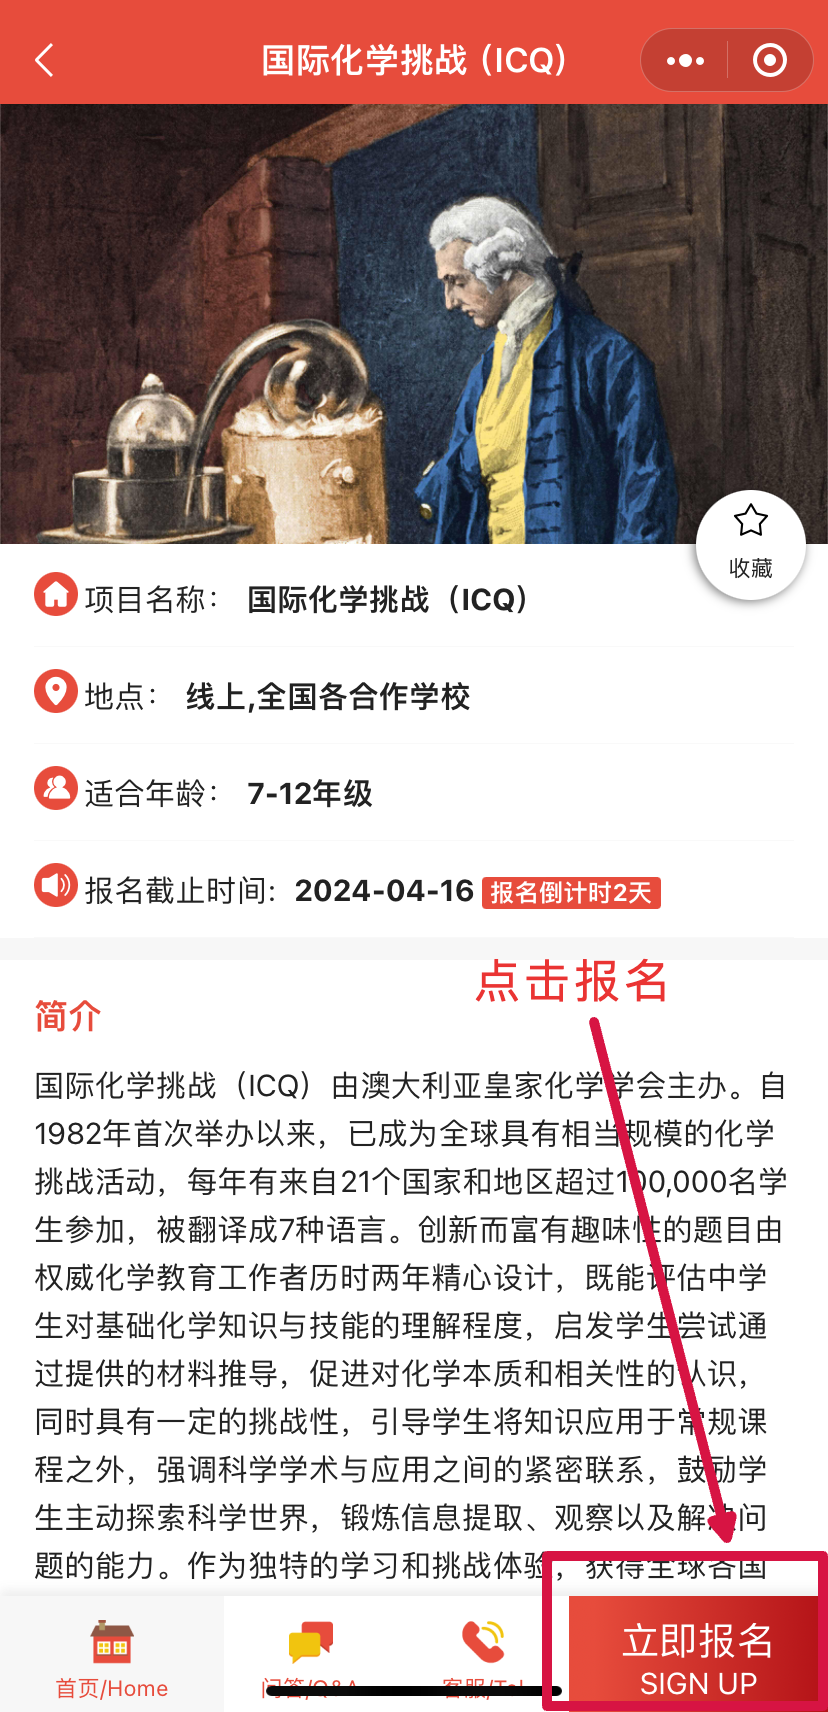 报名提醒！国际化学挑战ICQ报名即将截止！